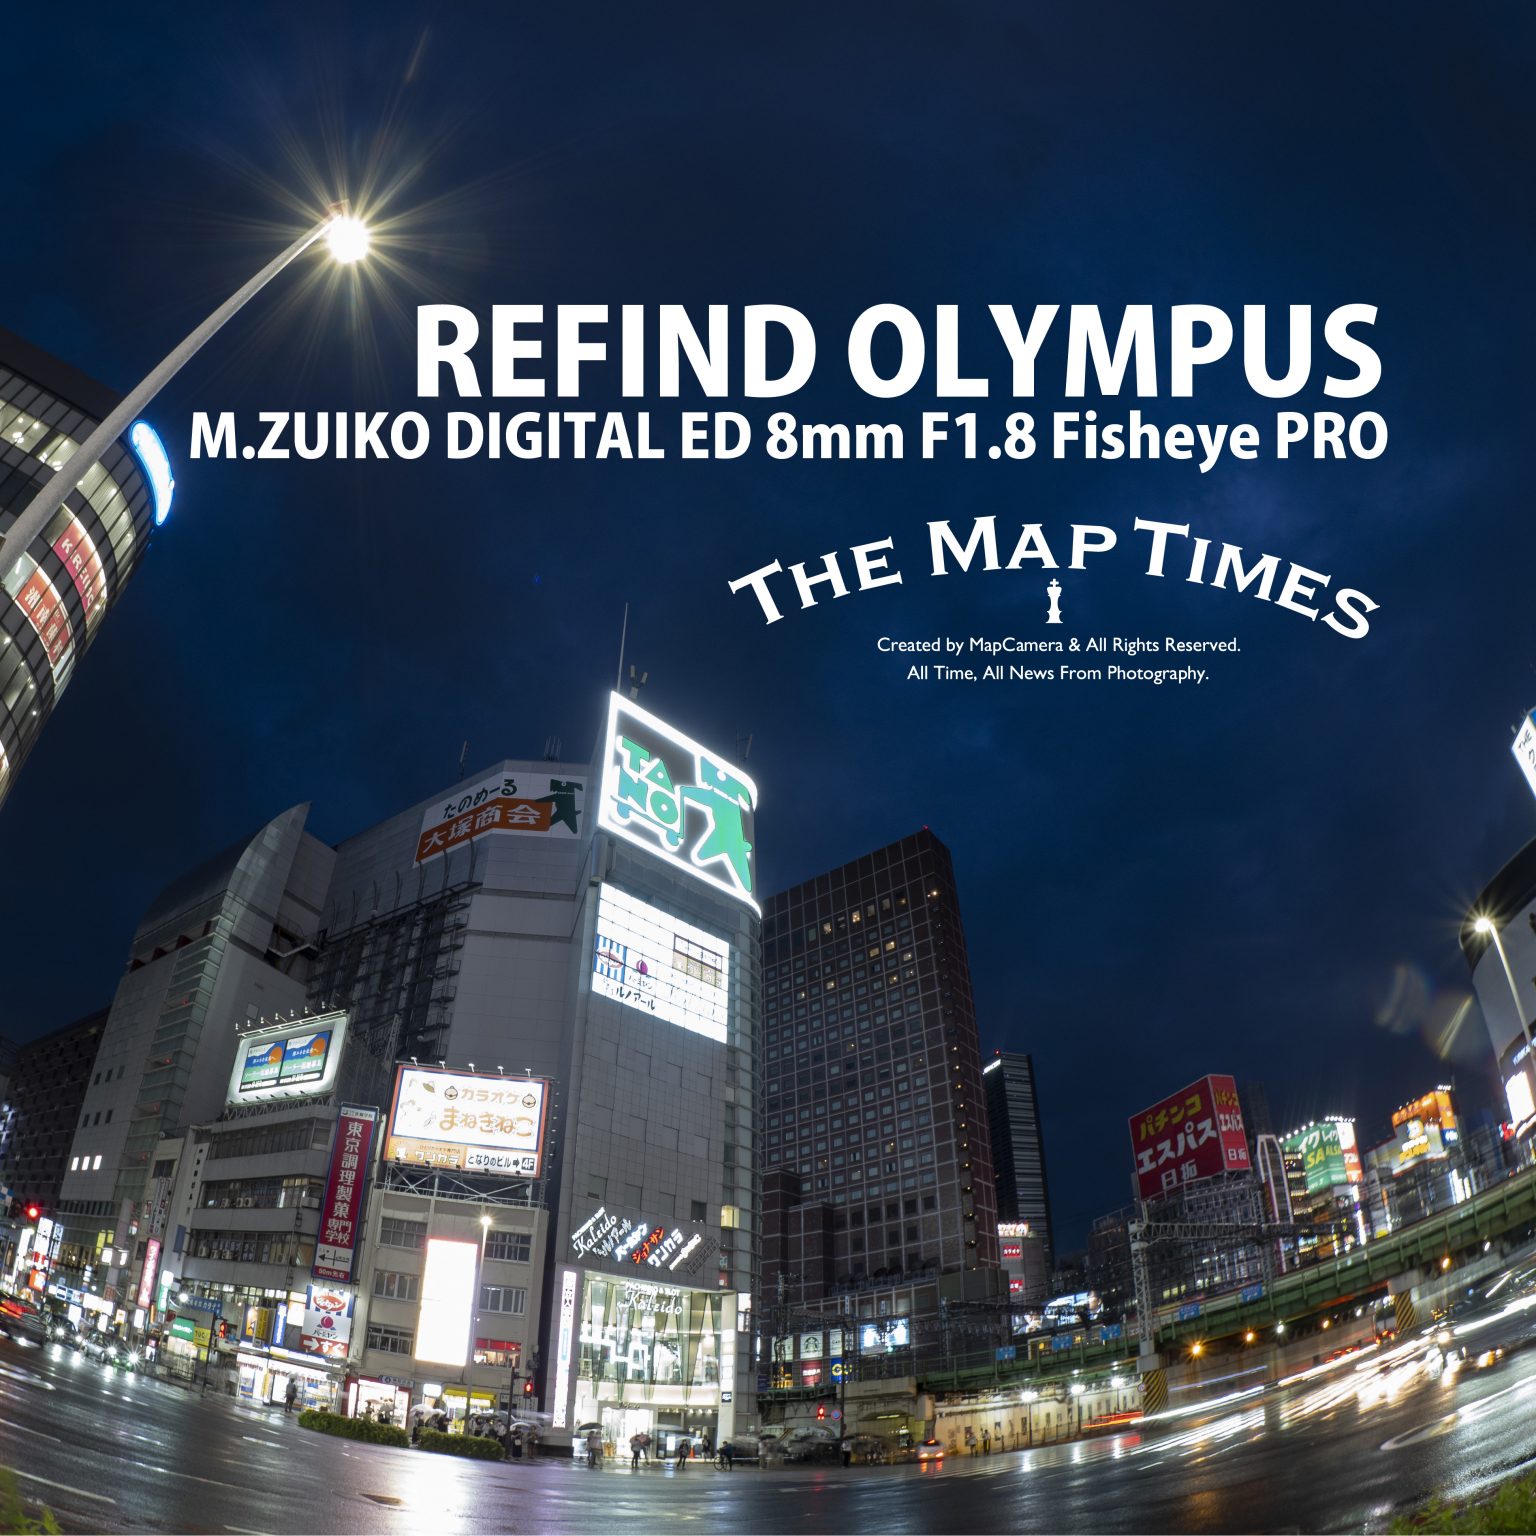 【OLYMPUS】REFIND OLYMPUS “M.ZUIKO DIGITAL ED 8mm F1.8 Fisheye PRO”